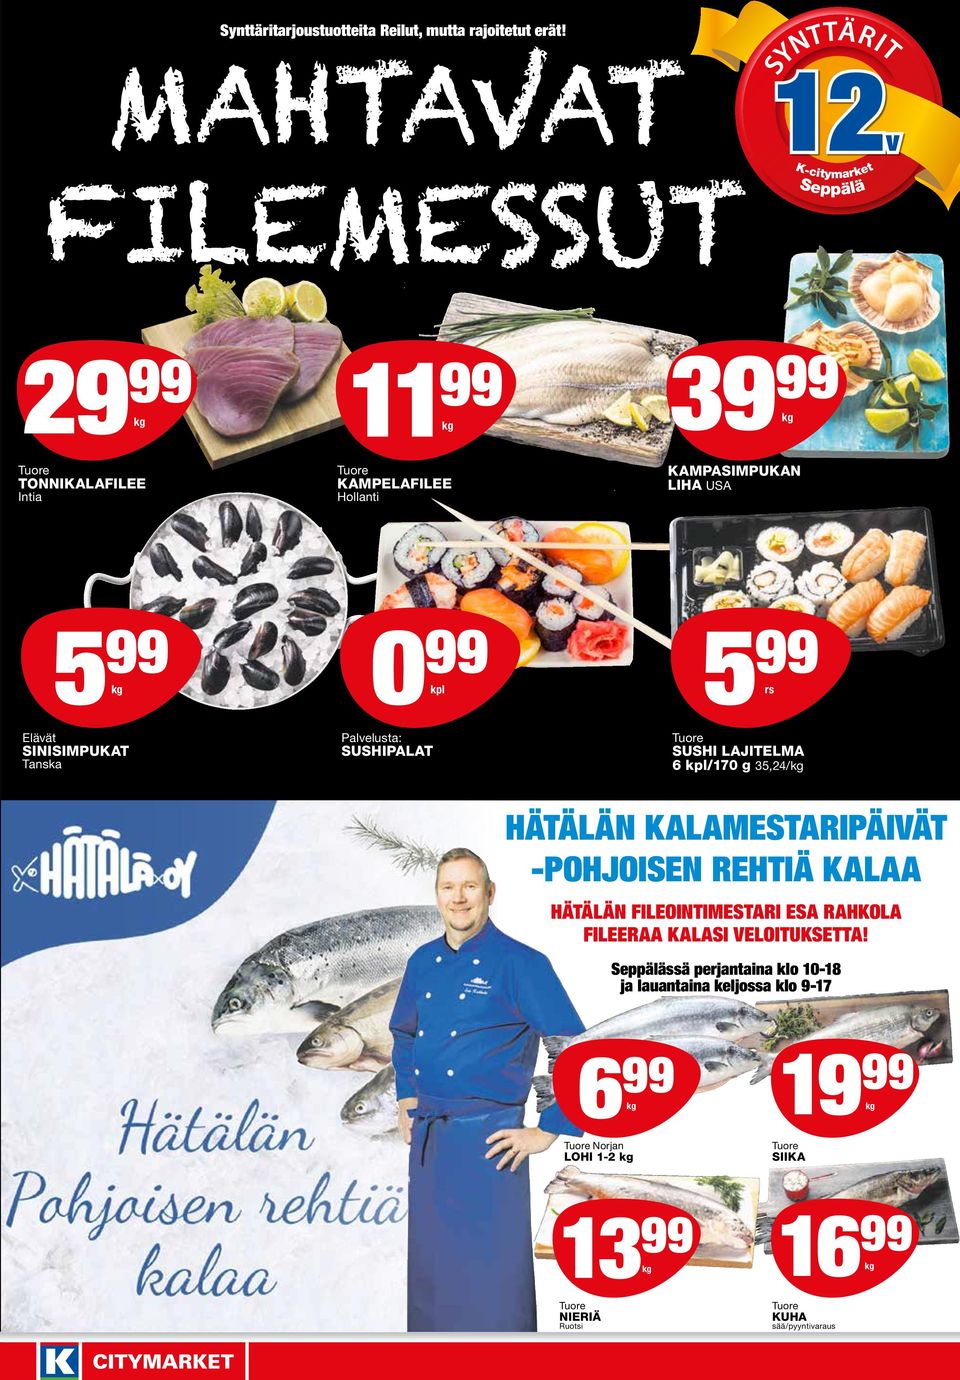 SINISIMPUKAT Tanska Palvelusta: SUSHIPALAT SUSHI LAJITELMA 6 kpl/170 g 35,24/ Hätälän Kalamestaripäivät -Pohjoisen rehtiä kalaa